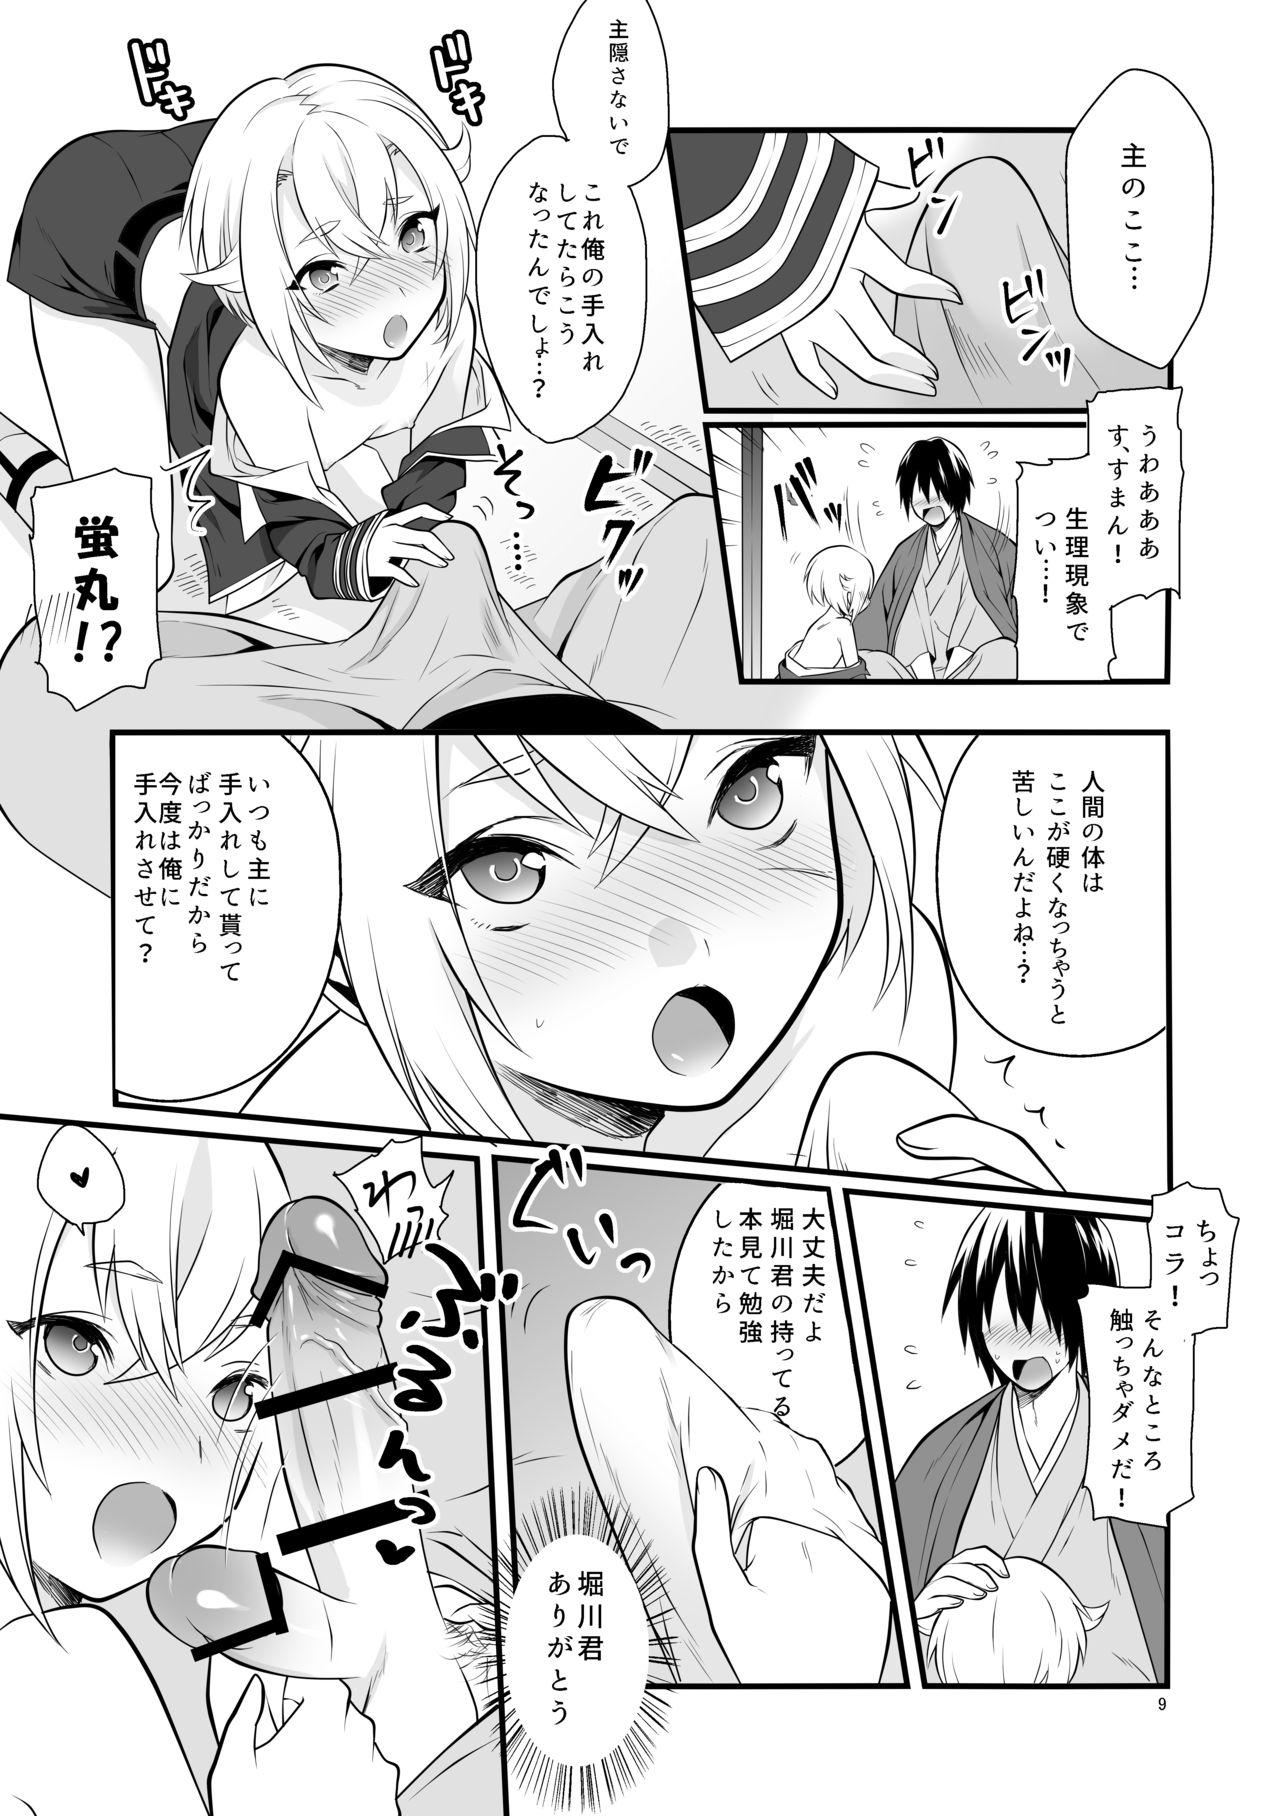 Camshow Hajimete no Hotarumaru - Touken ranbu Amatur Porn - Page 10